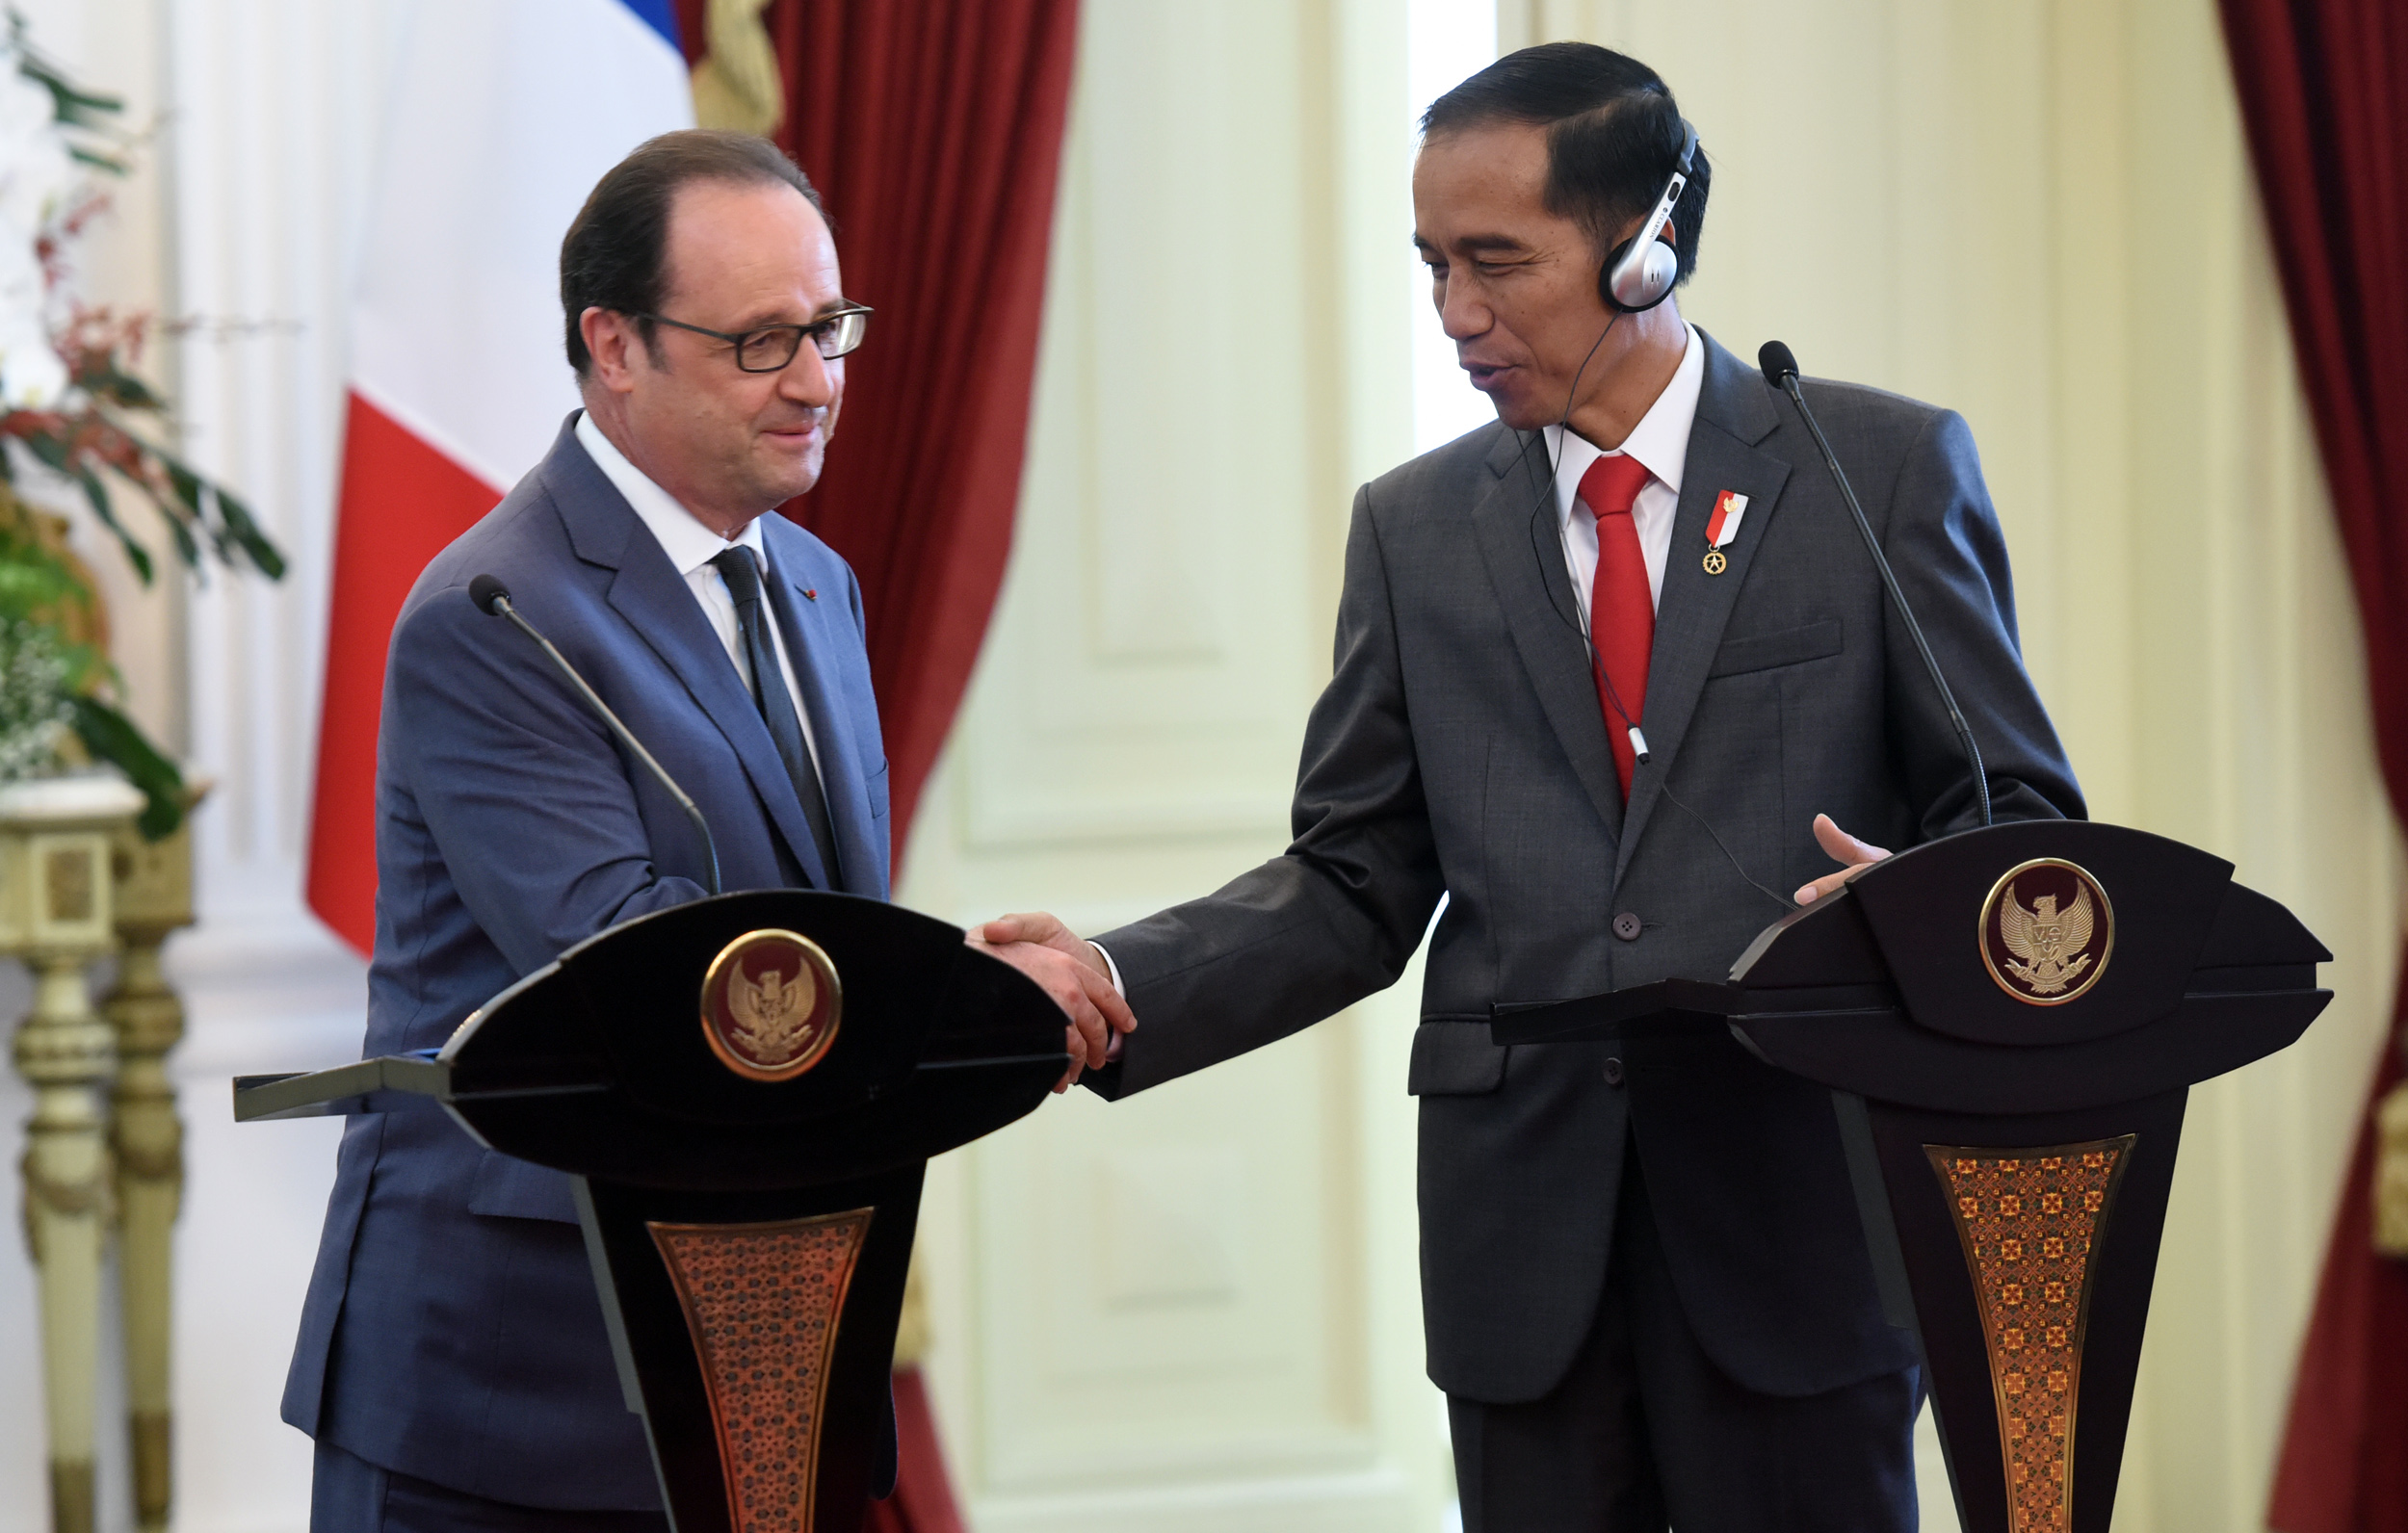 Presiden Jokowi dan Presiden Perancis Francois Hollande, saat melakukan keterangan pers bersama, di Istana Merdeka, Jakarta, Rabu (29/3) siang. (Foto: Rahmat/Humas)